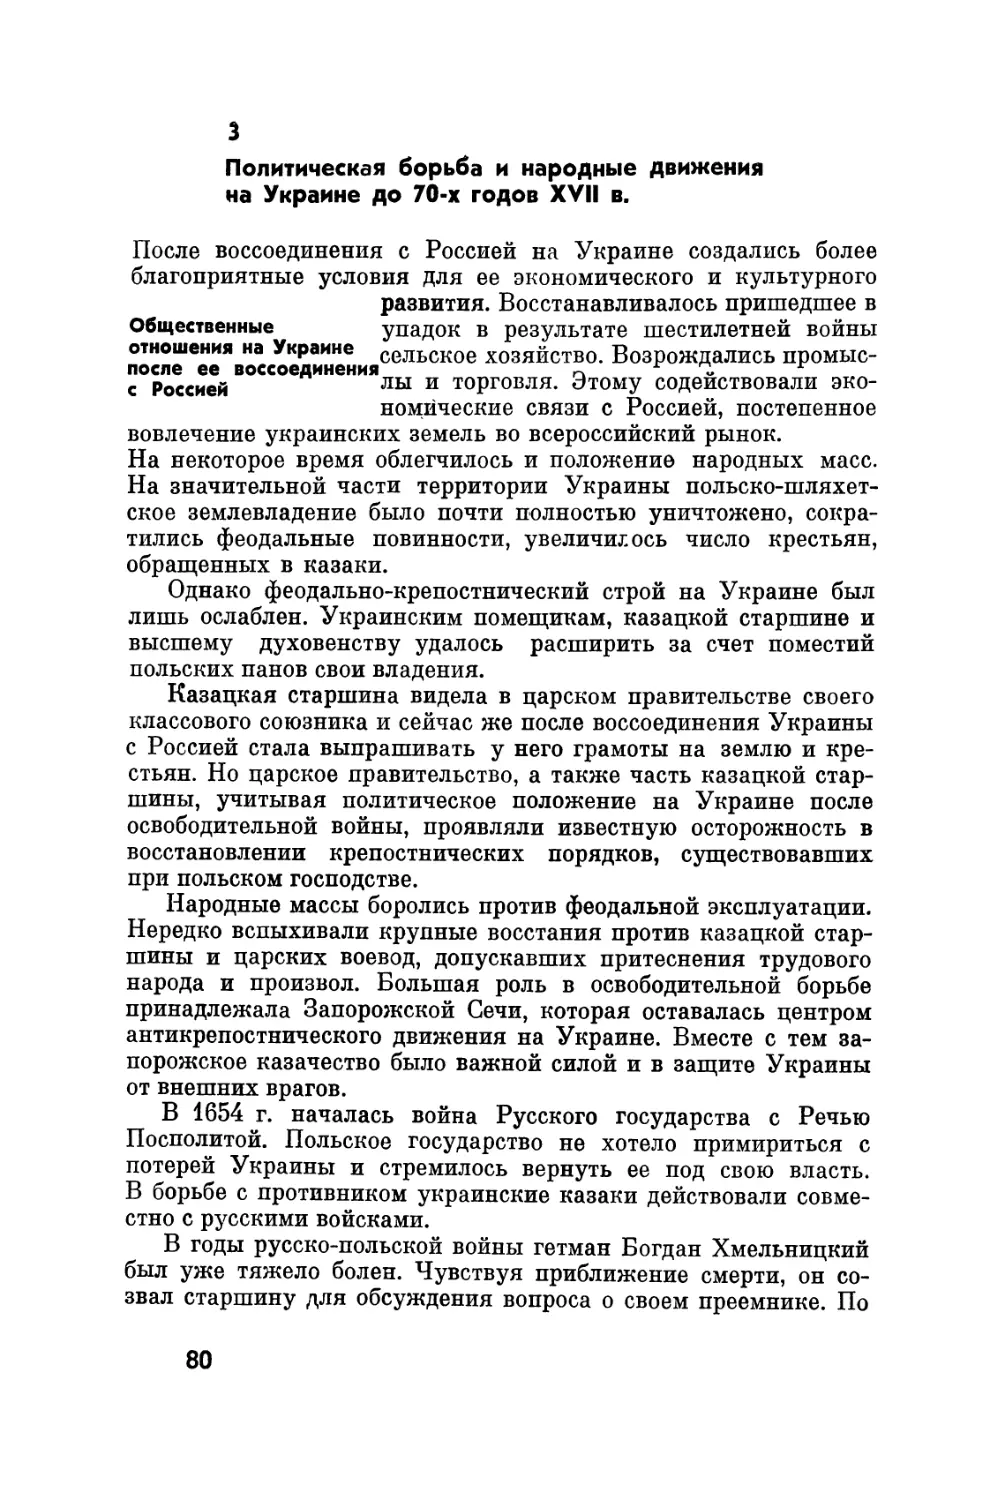 3. Политическая борьба и народные движения на Украине до 70-х годов XVII в.